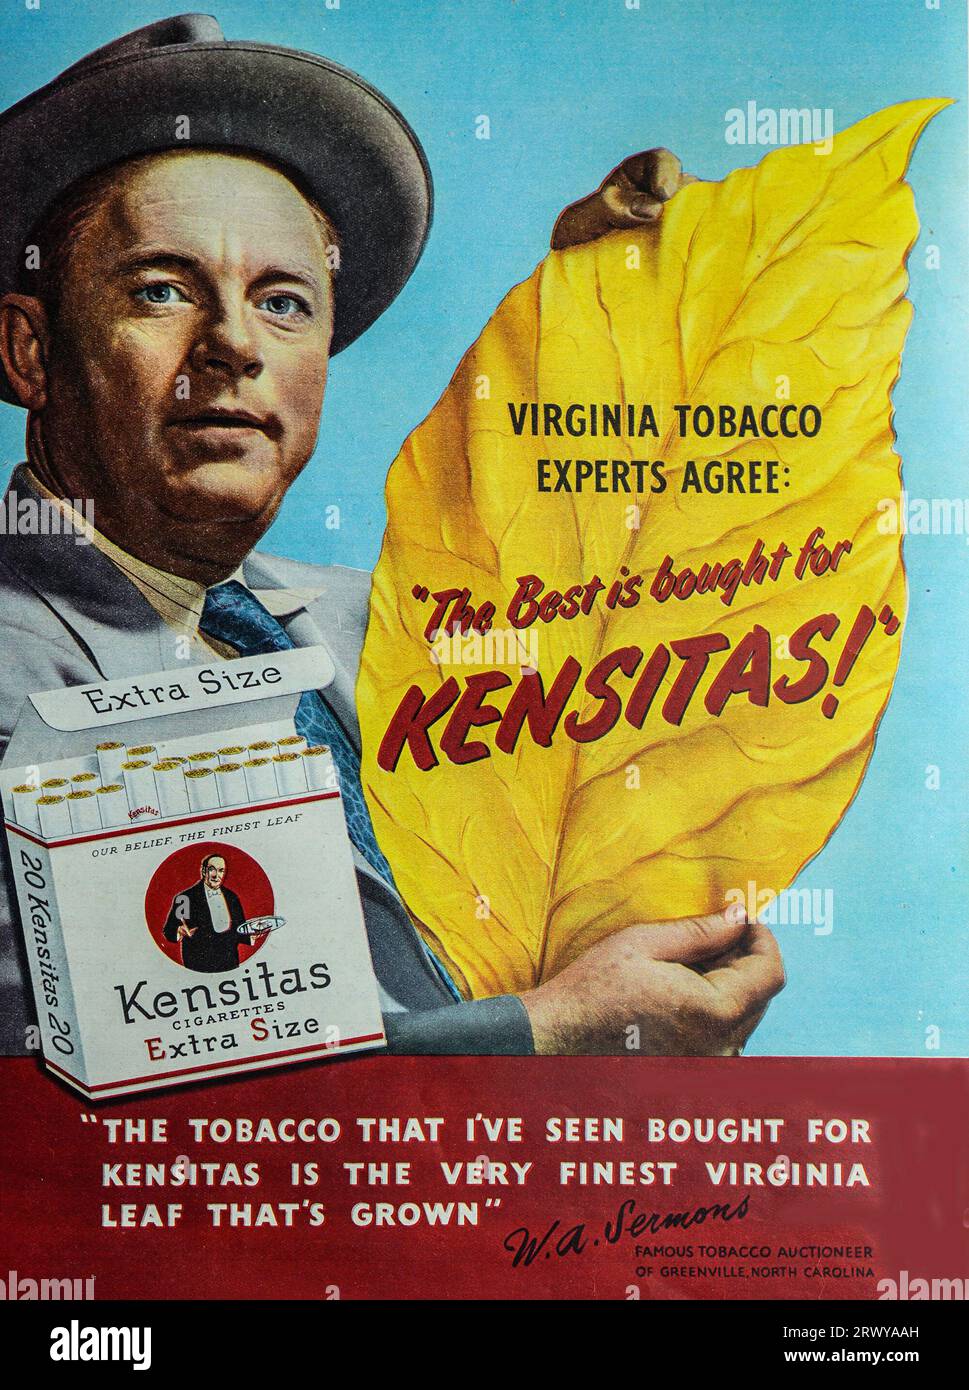 Une publicité de 1950 pour Kensitas cigarettes-Extra Size. Mettant en vedette un commissaire-priseur de tabac qui déclare que le tabac qu’il a vu acheté pour Kensitas «est la plus belle Virginia Leaf qui est cultivée». Les cigarettes Kensitas sont toujours produites. La marque appartient au Groupe Gallaher. Banque D'Images